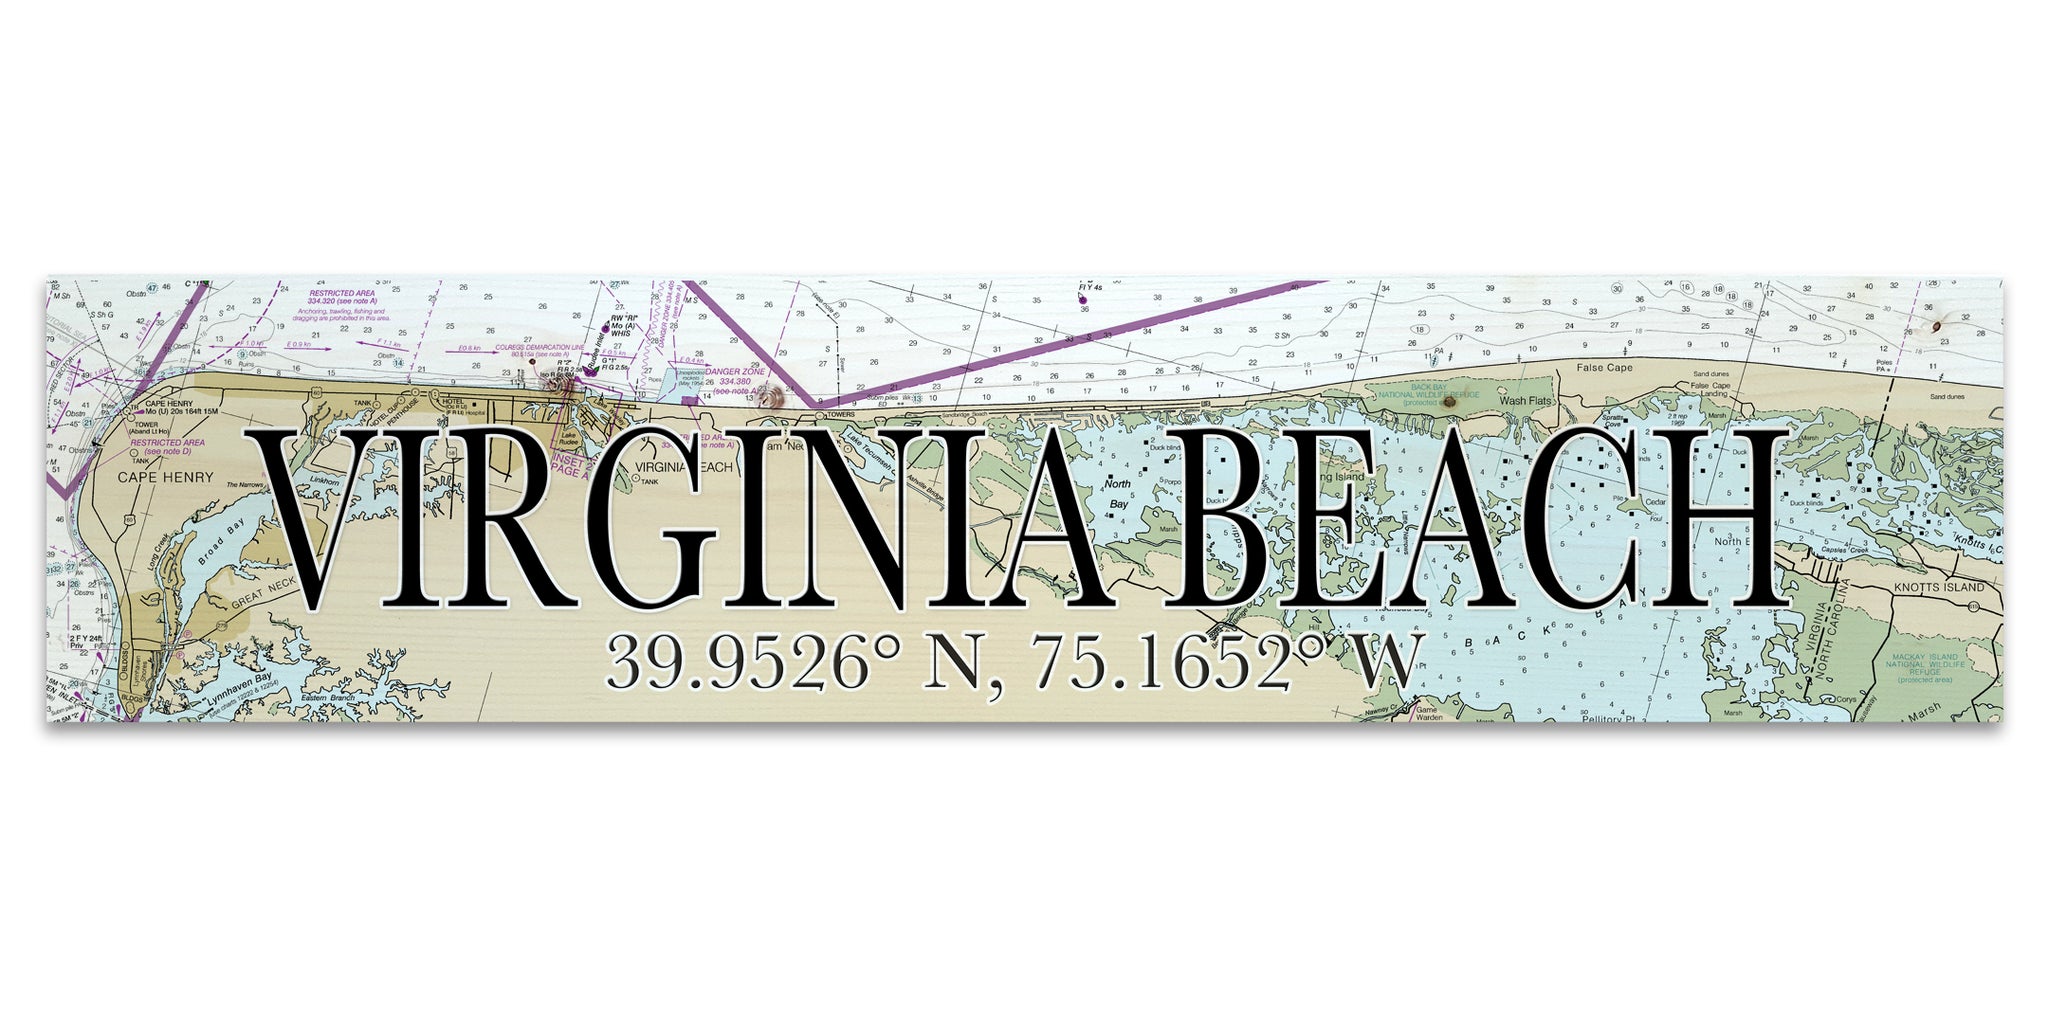 Virginia Beach, VA Coordinate Sign